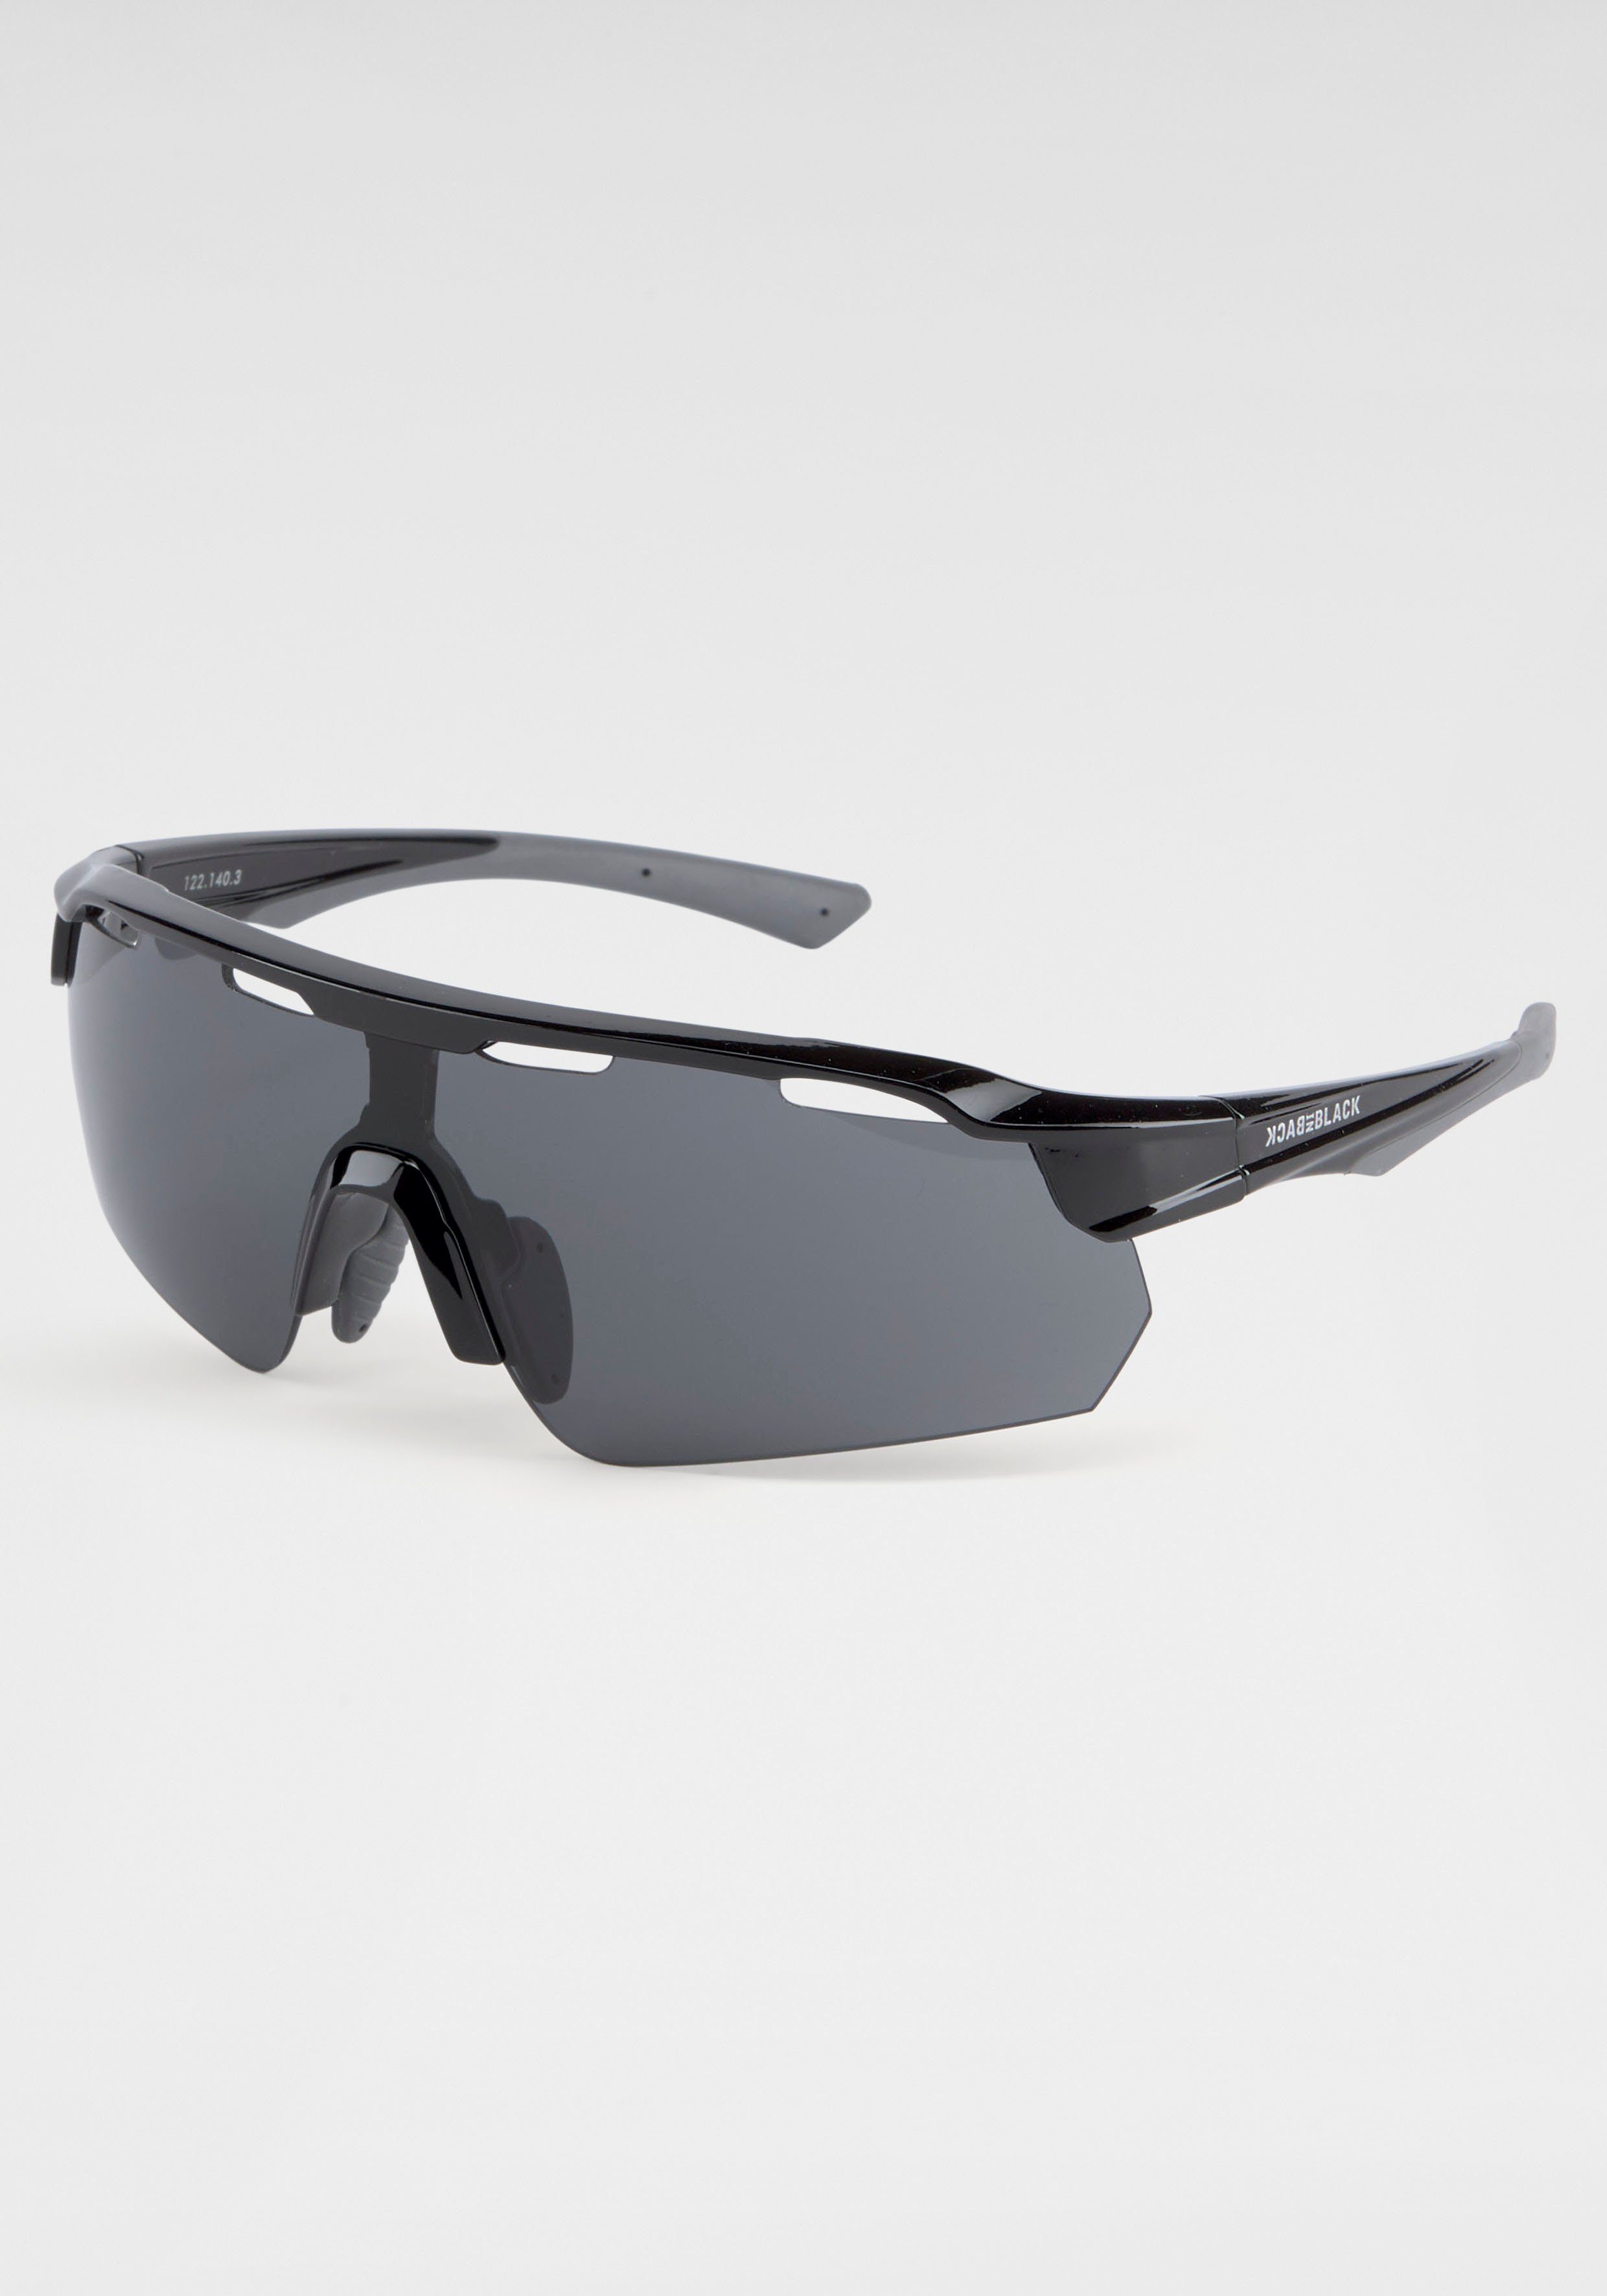 Luftlöchern Gläsern, Gläsern BACK mit Sonnenbrille den BLACK Mit IN Eyewear über gebogenen